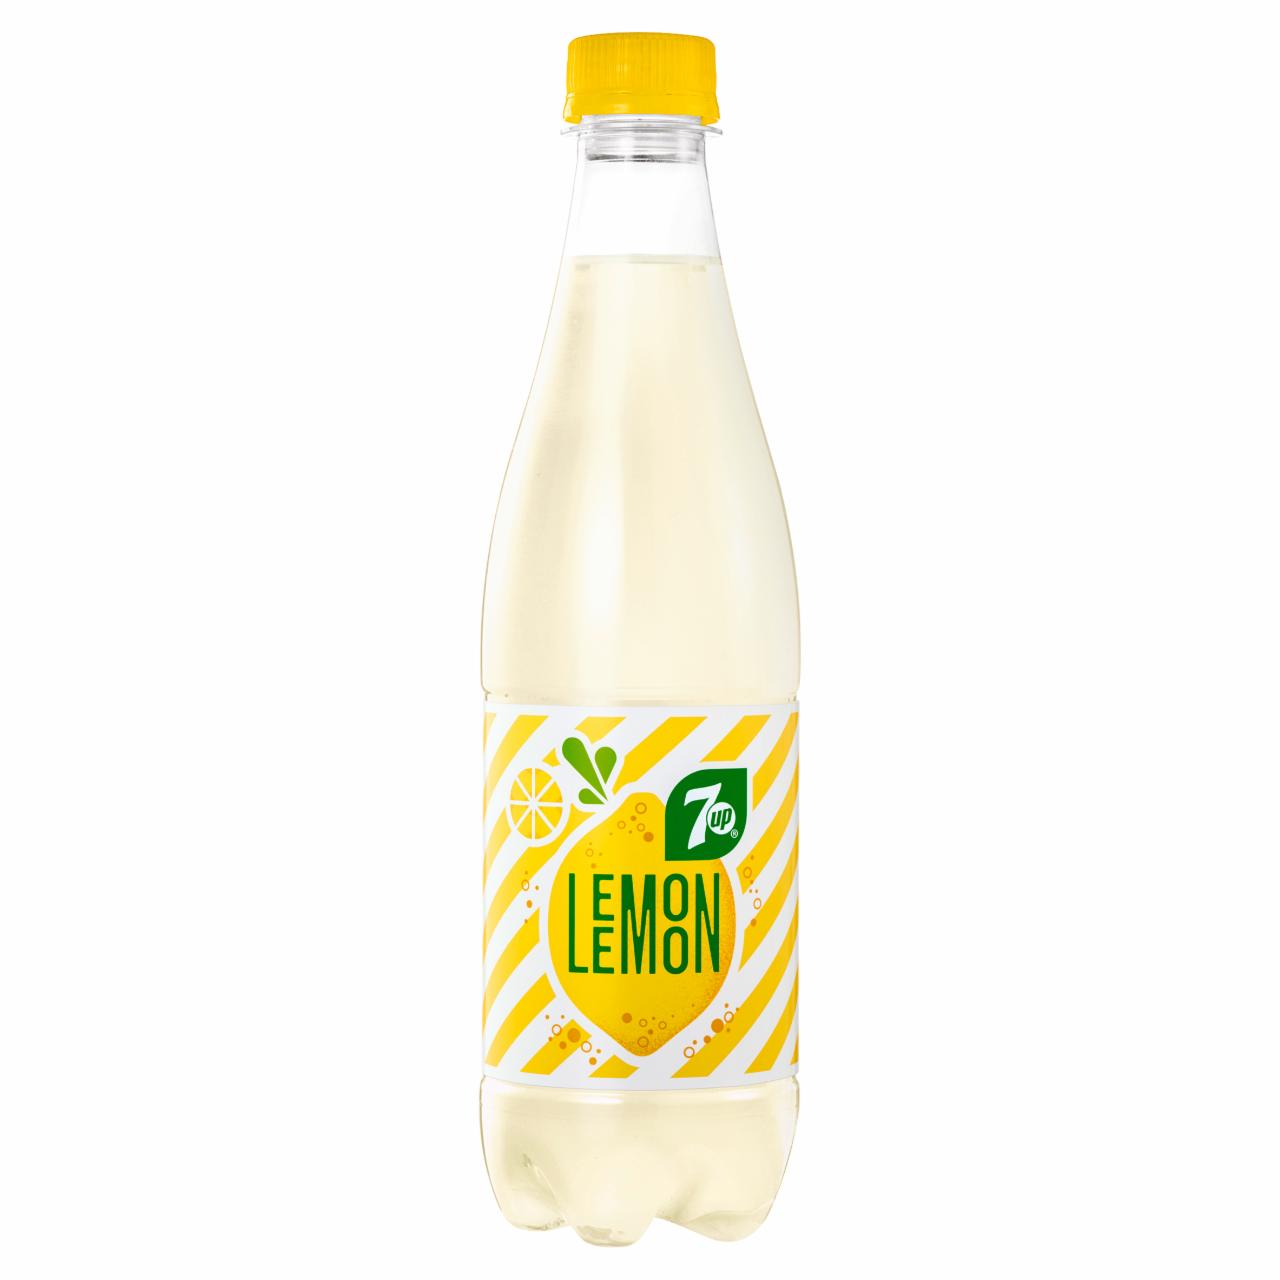 Zdjęcia - 7UP Lemon Napój gazowany smak cytrynowy 500 ml